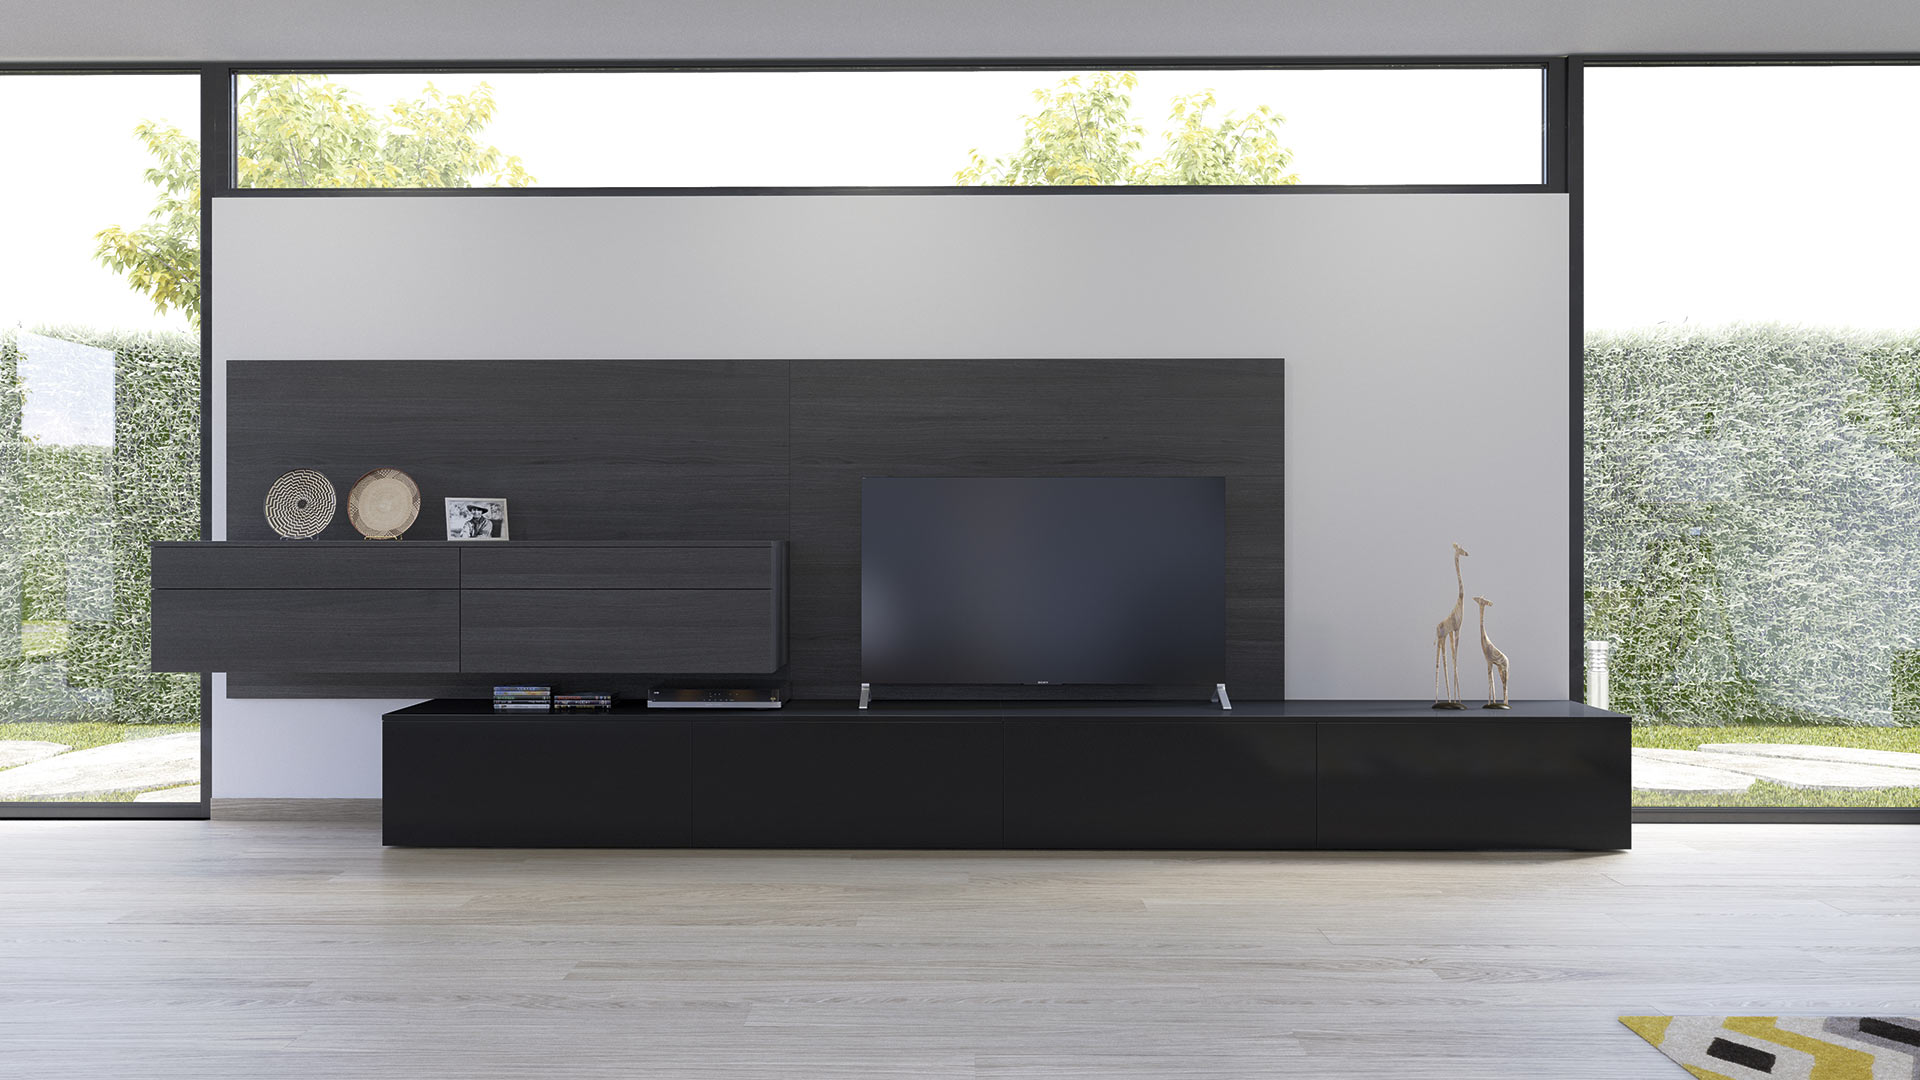 Amplia sala con mobiliario en color negro y una televisión sobre una base rectangular también de color negro